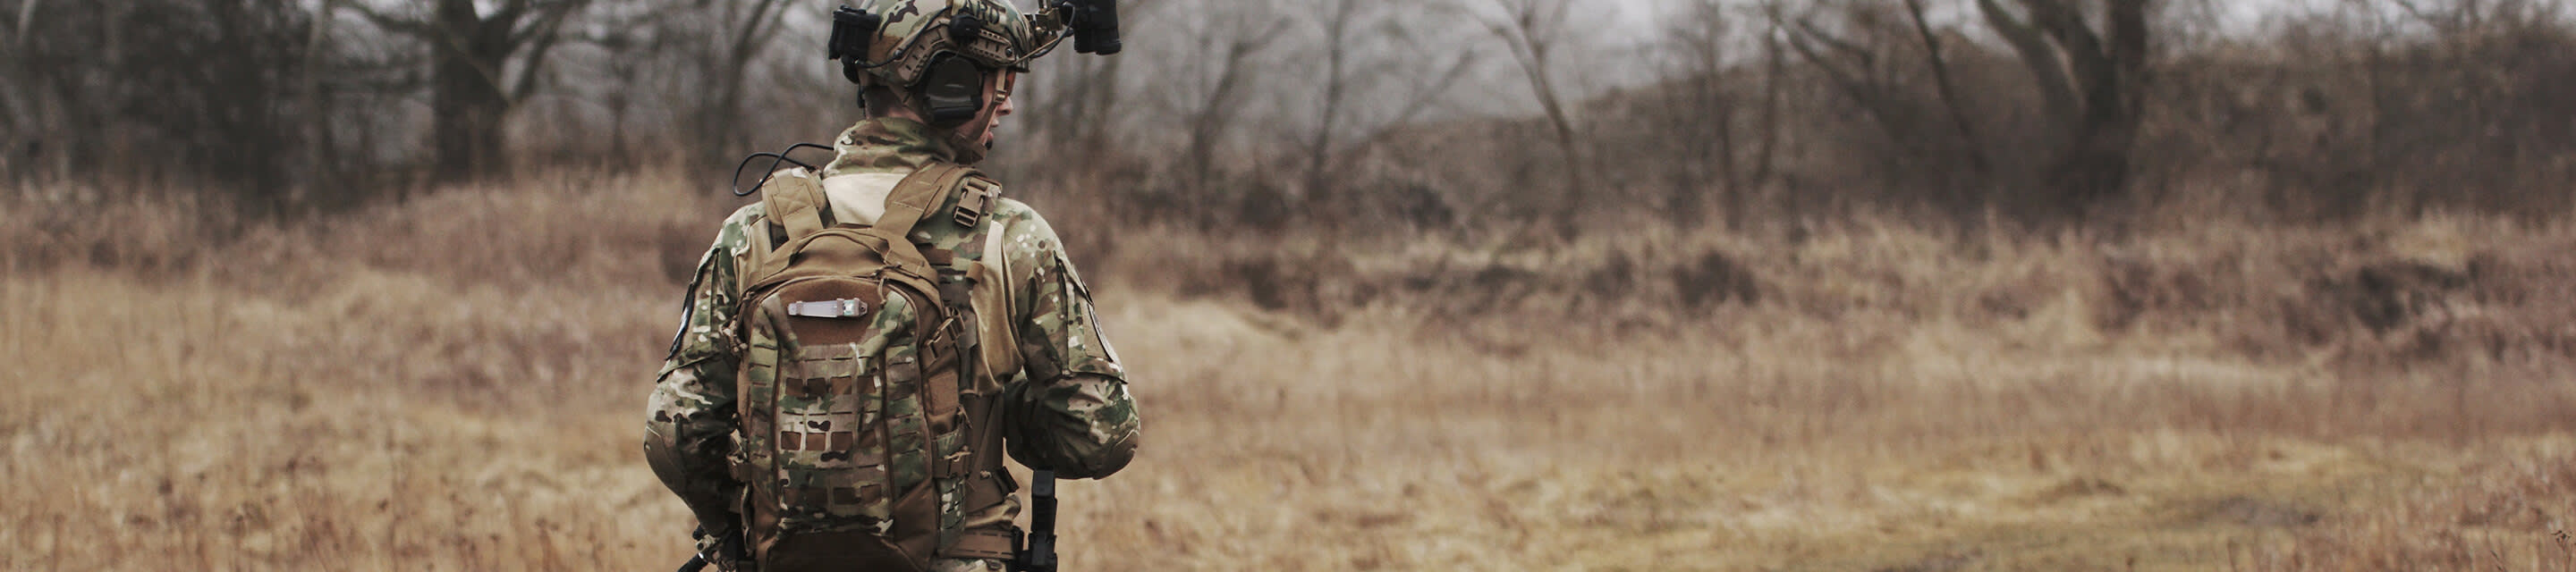 Soldier wearing a uniform in a field